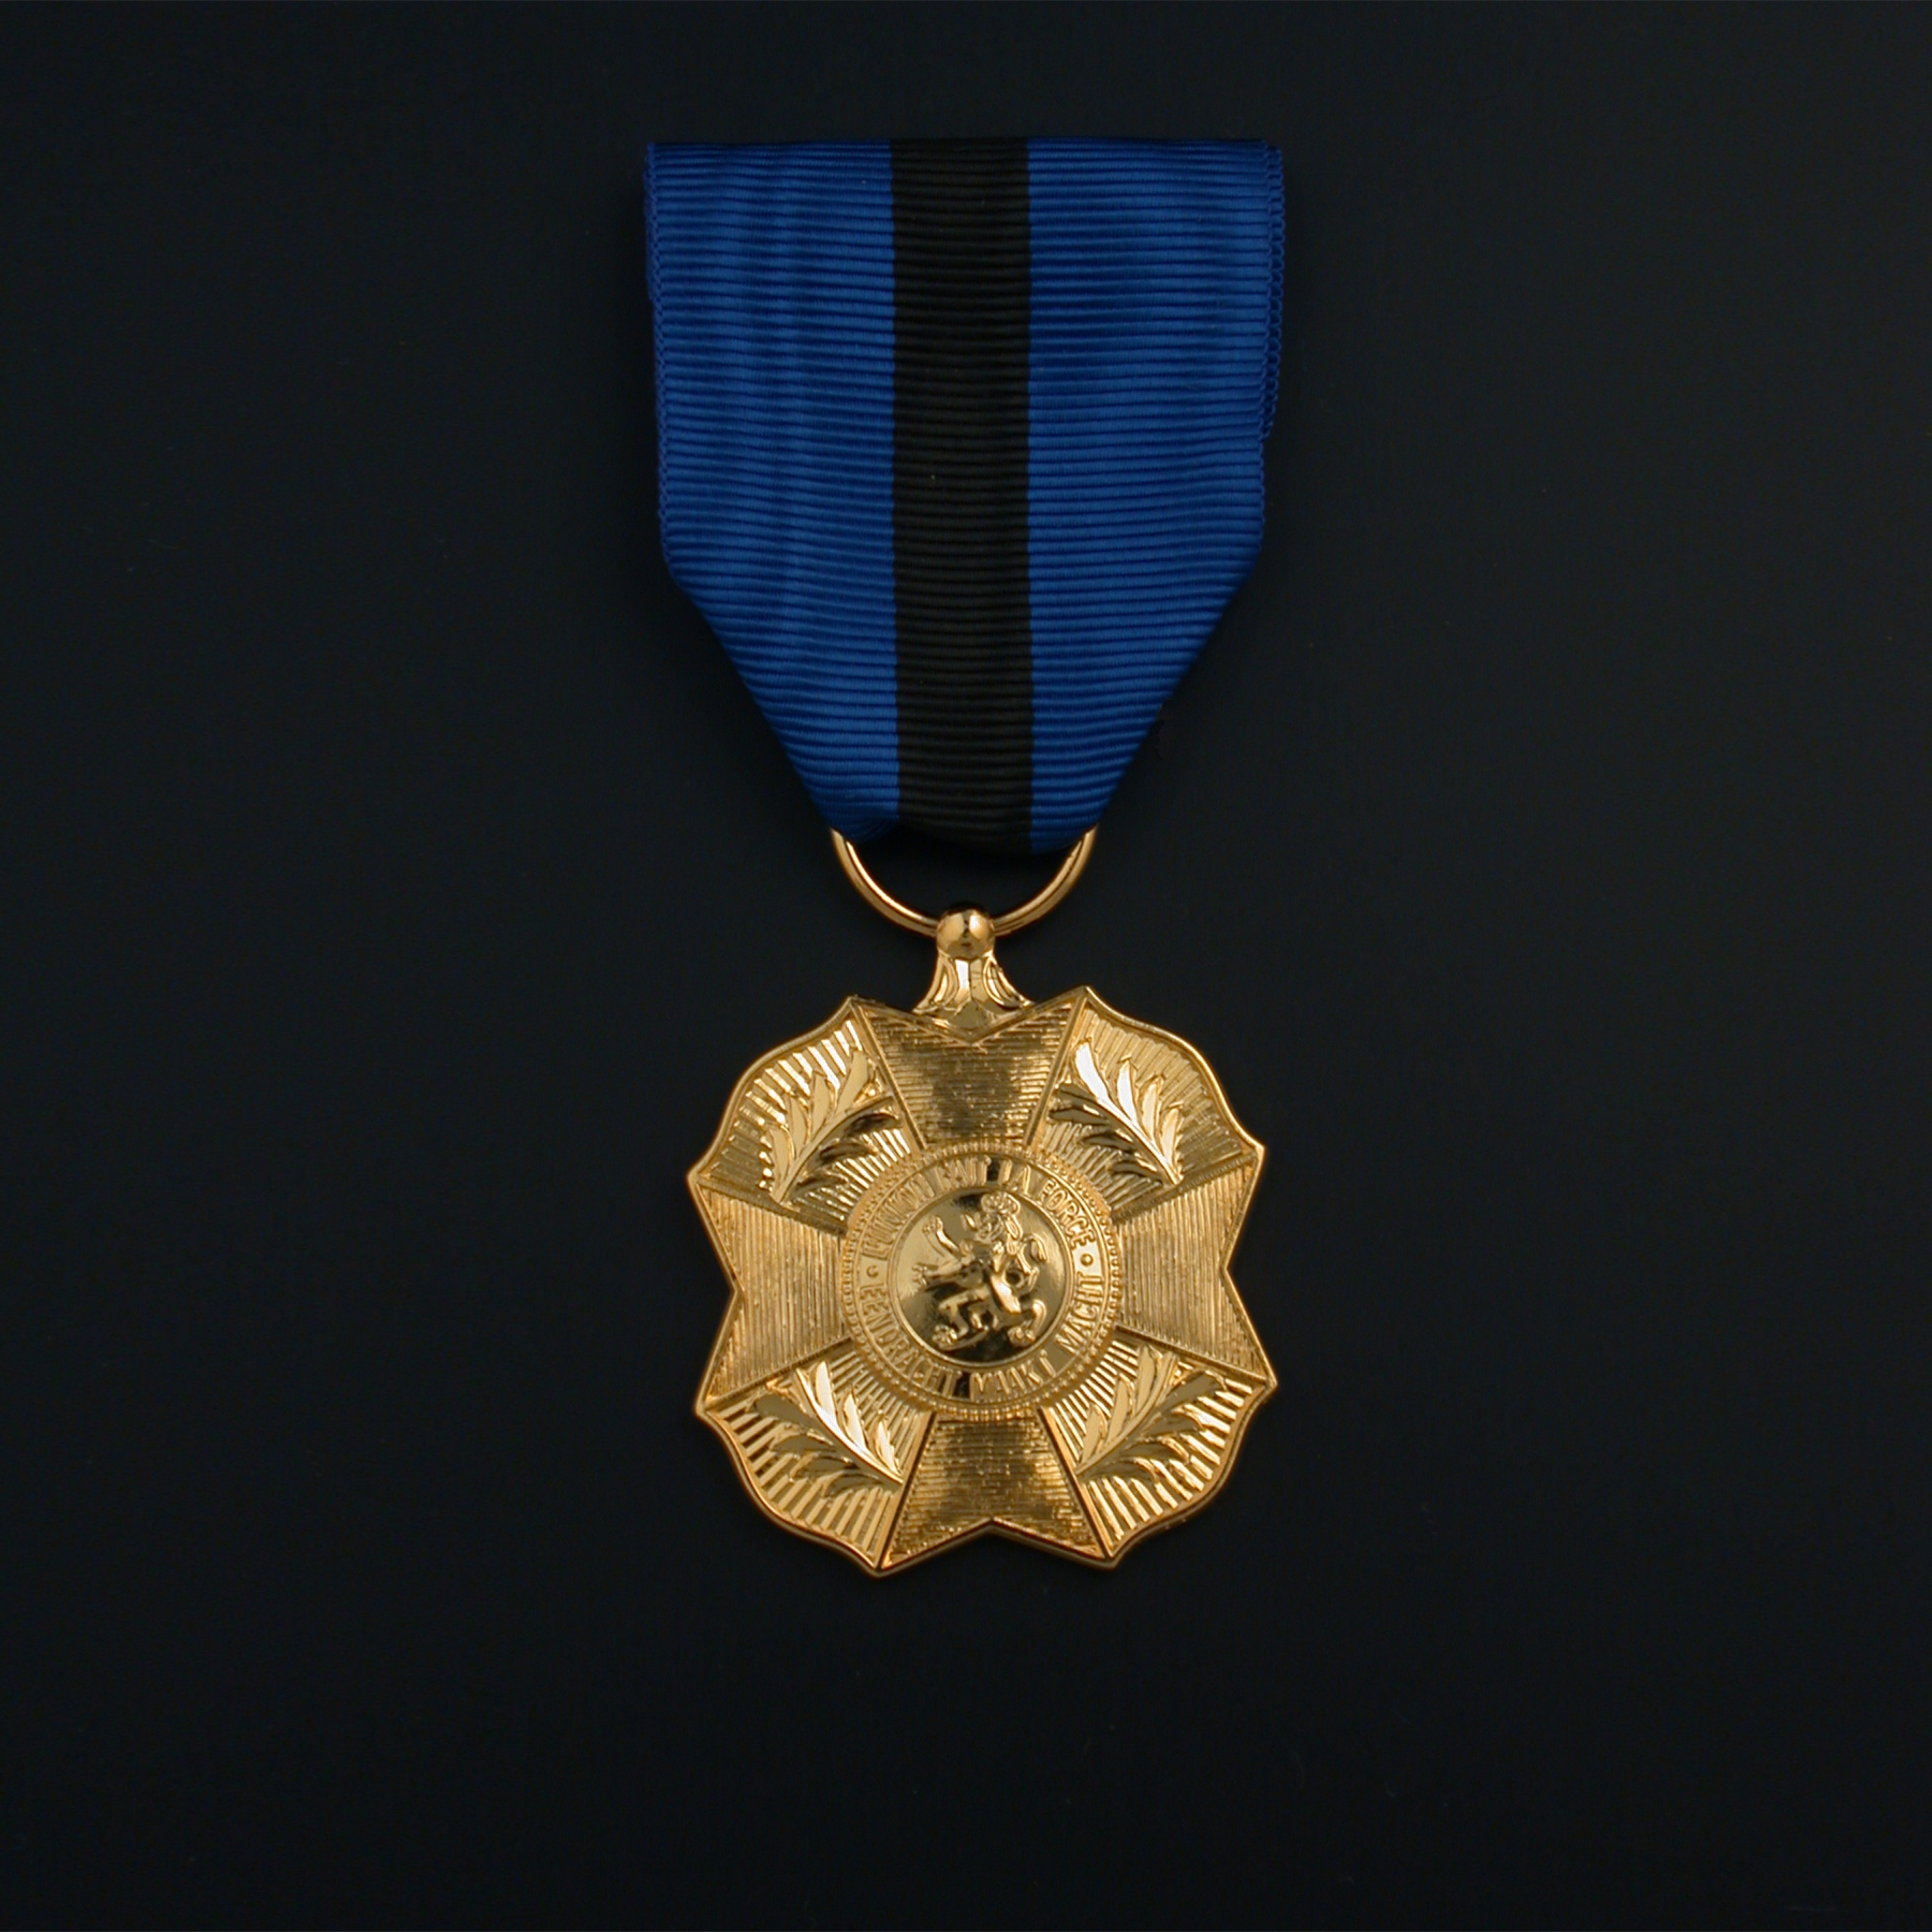 officieel-ereteken-orde-leopold-ii-gouden-medaille-01-01-04-orde-leopold-ii-gouden-medaille-officieel-model.jpg